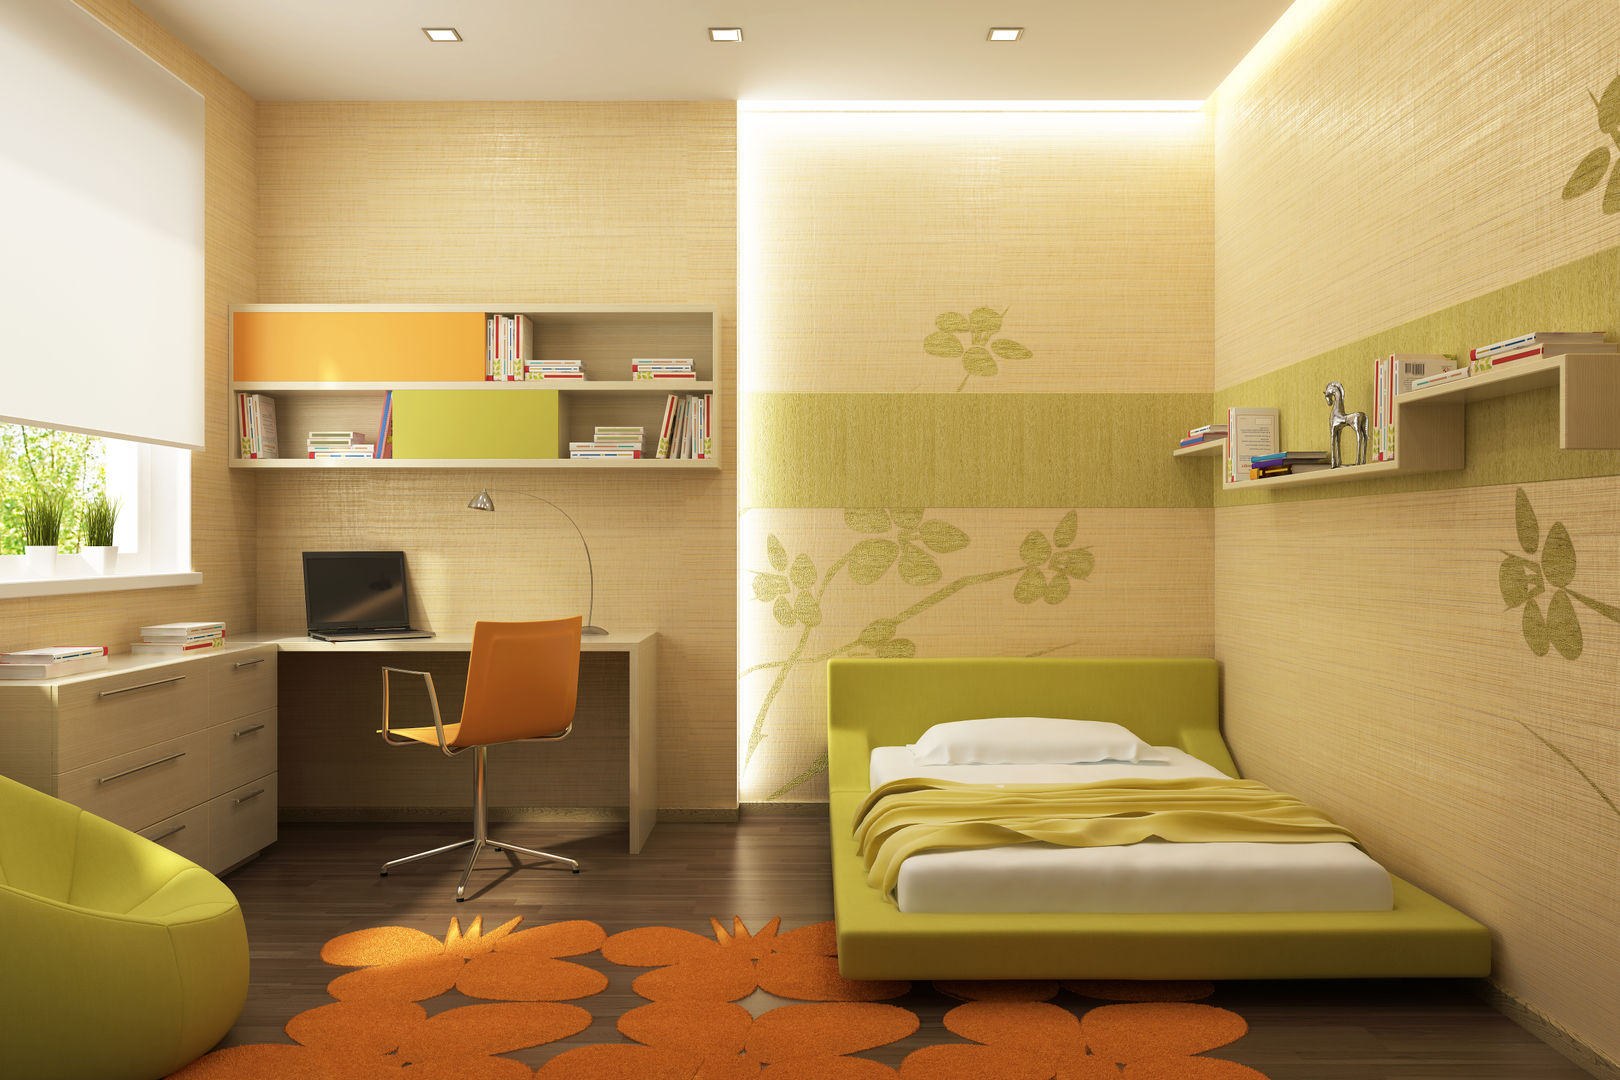 Bedroom Interior Design homify Modern Bedroom